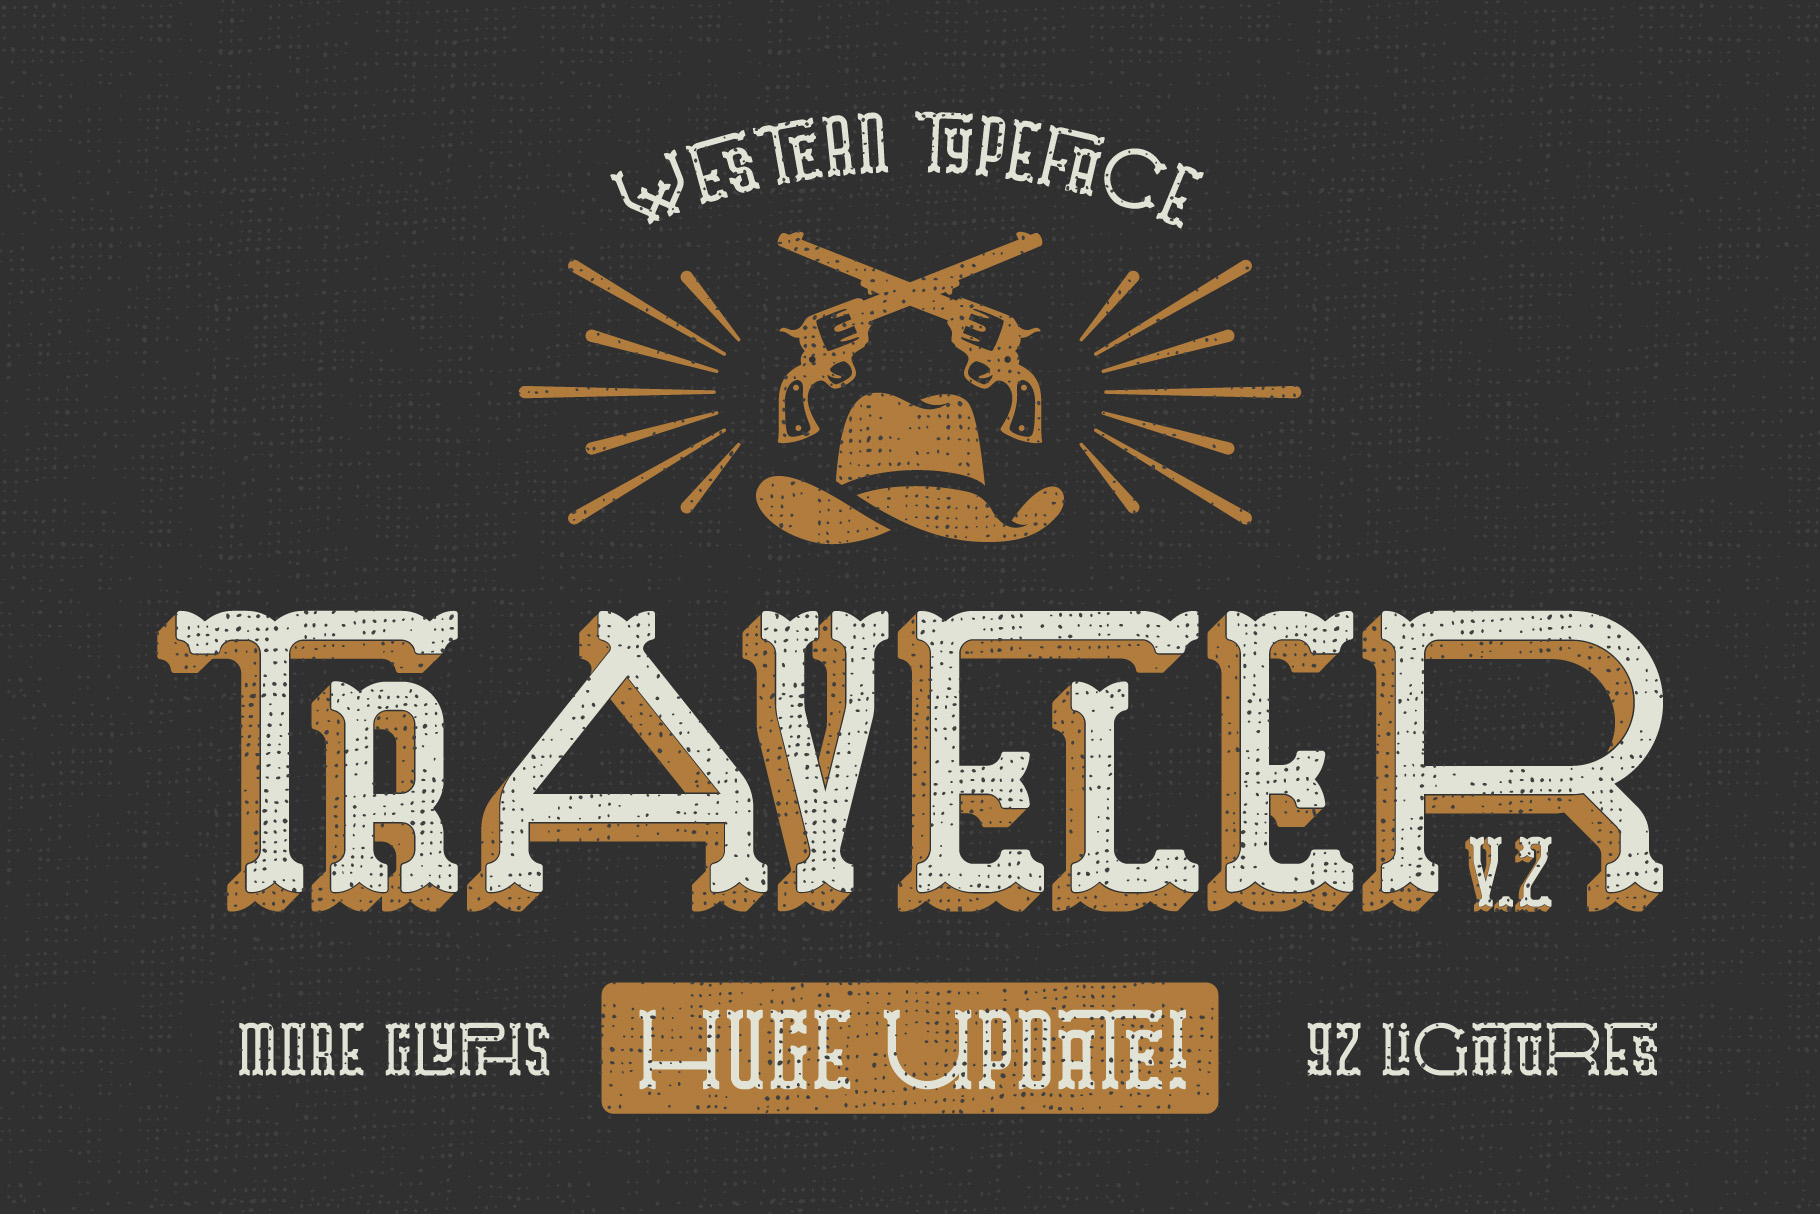 Traveler v.2 Typeface Facebook image.